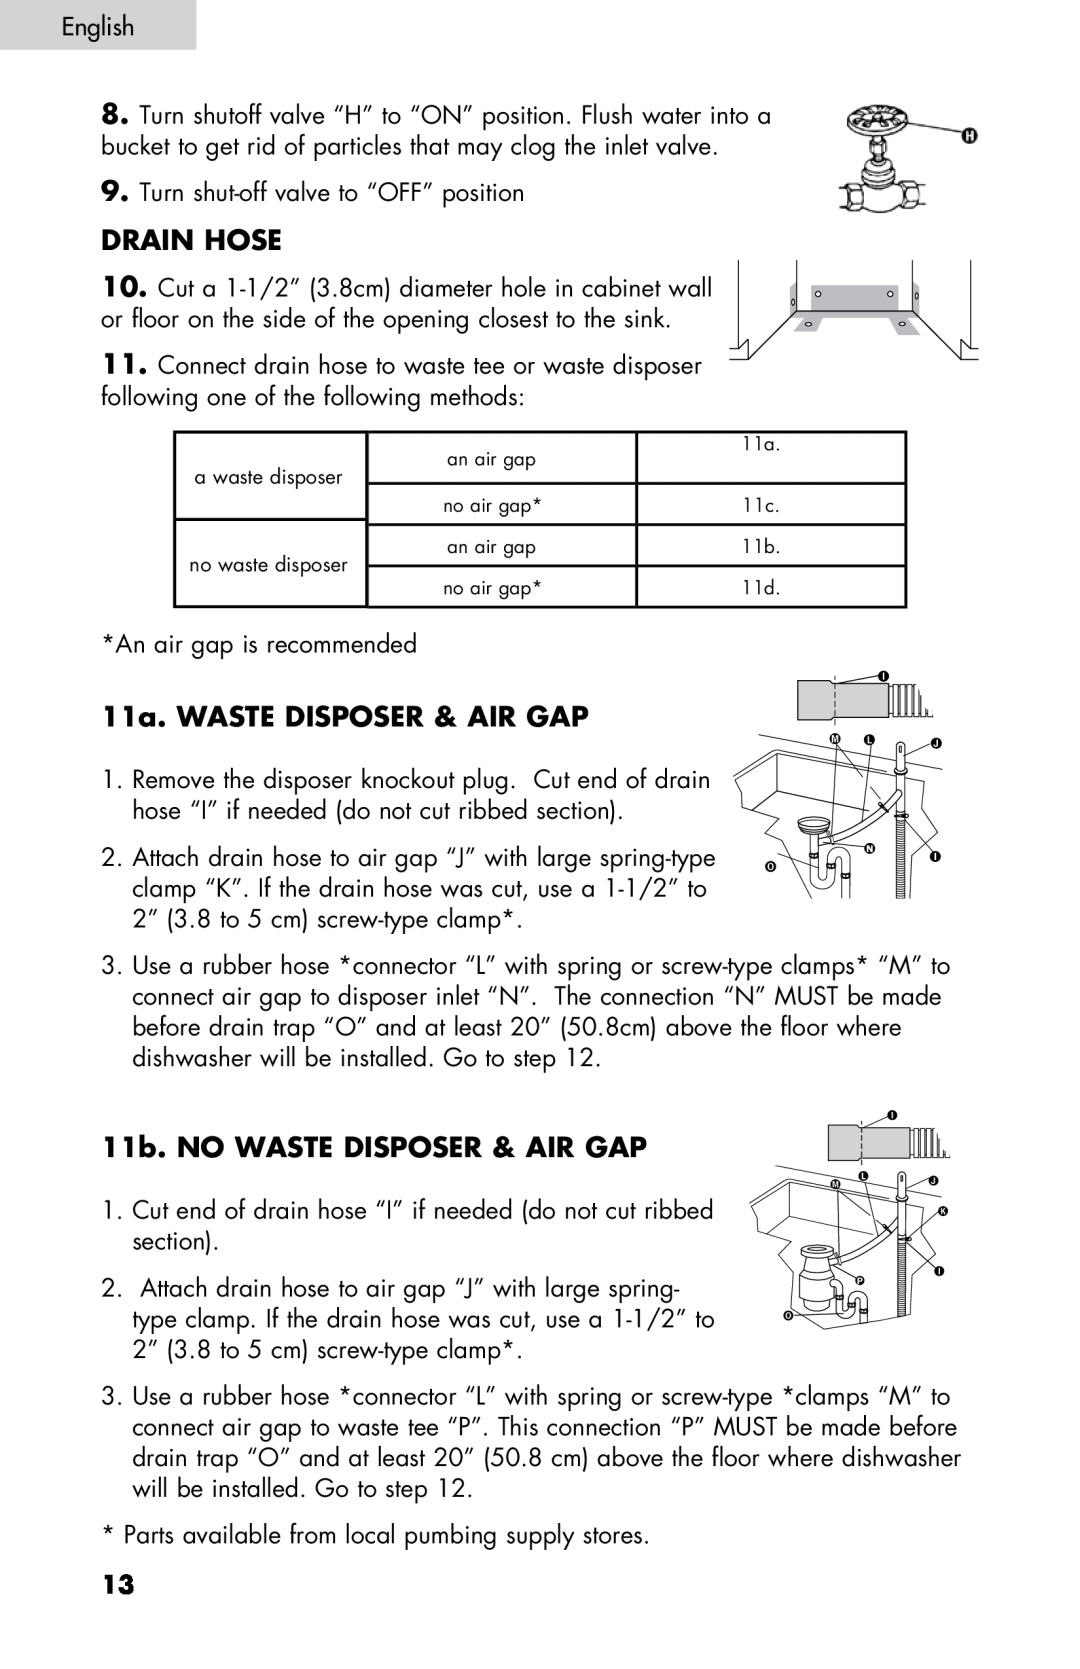 Haier DW-7777-01 manual Drain hose, 11a. Waste disposer & air gap, 11b. No waste disposer & air gap 